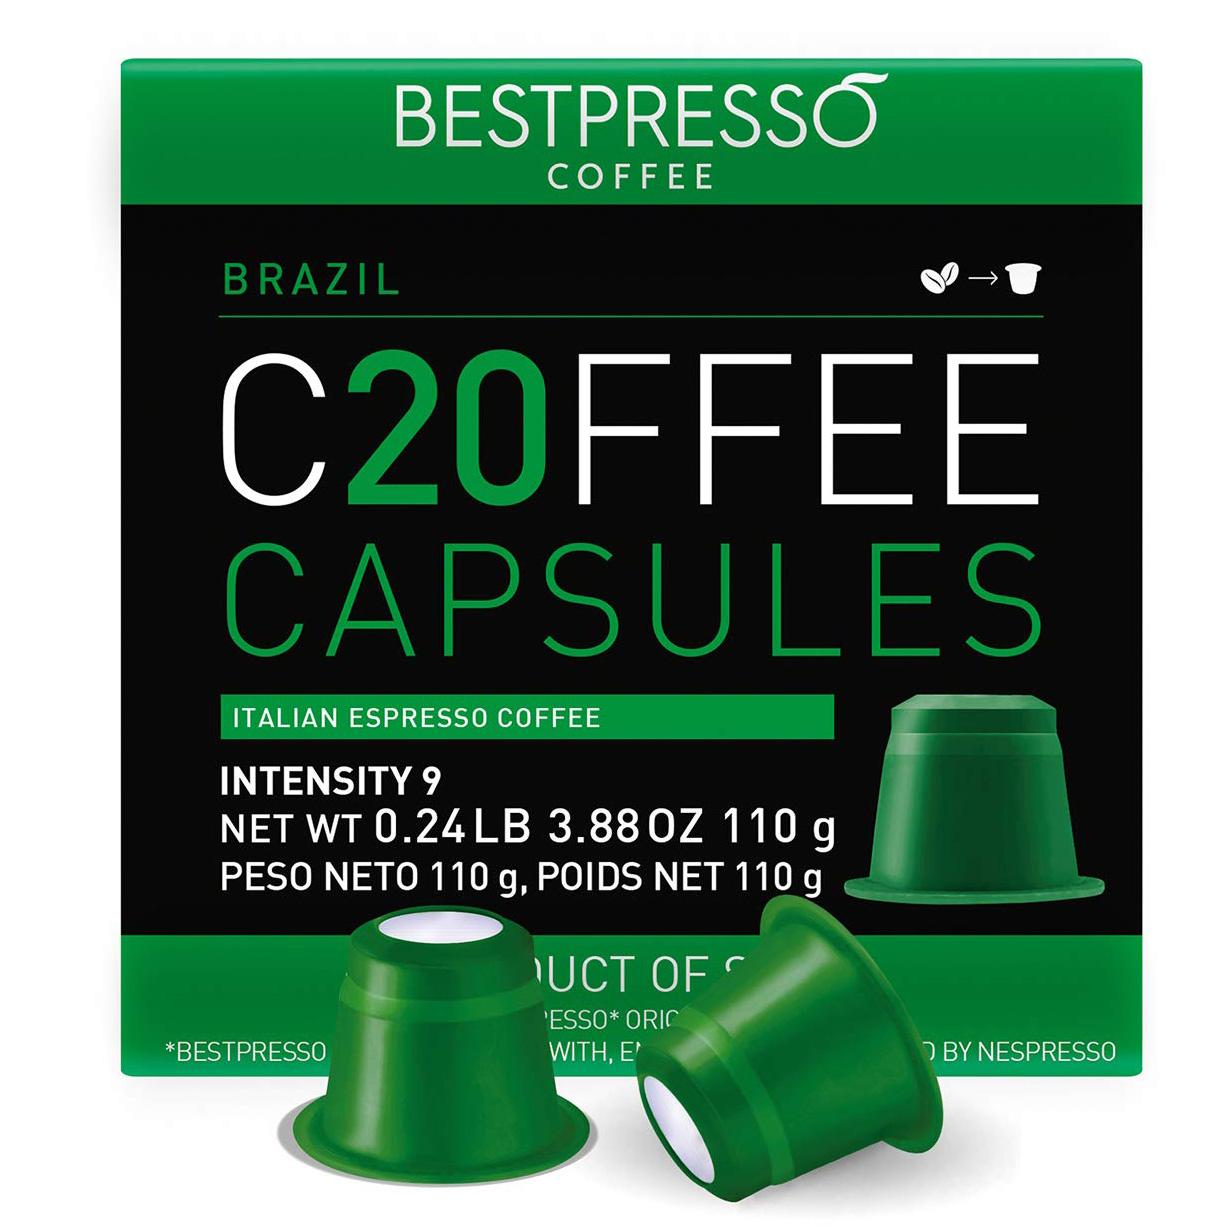 Nespresso Original Machine Bestpresso Coffee Pods 120 Pack for $15.99 Shipped